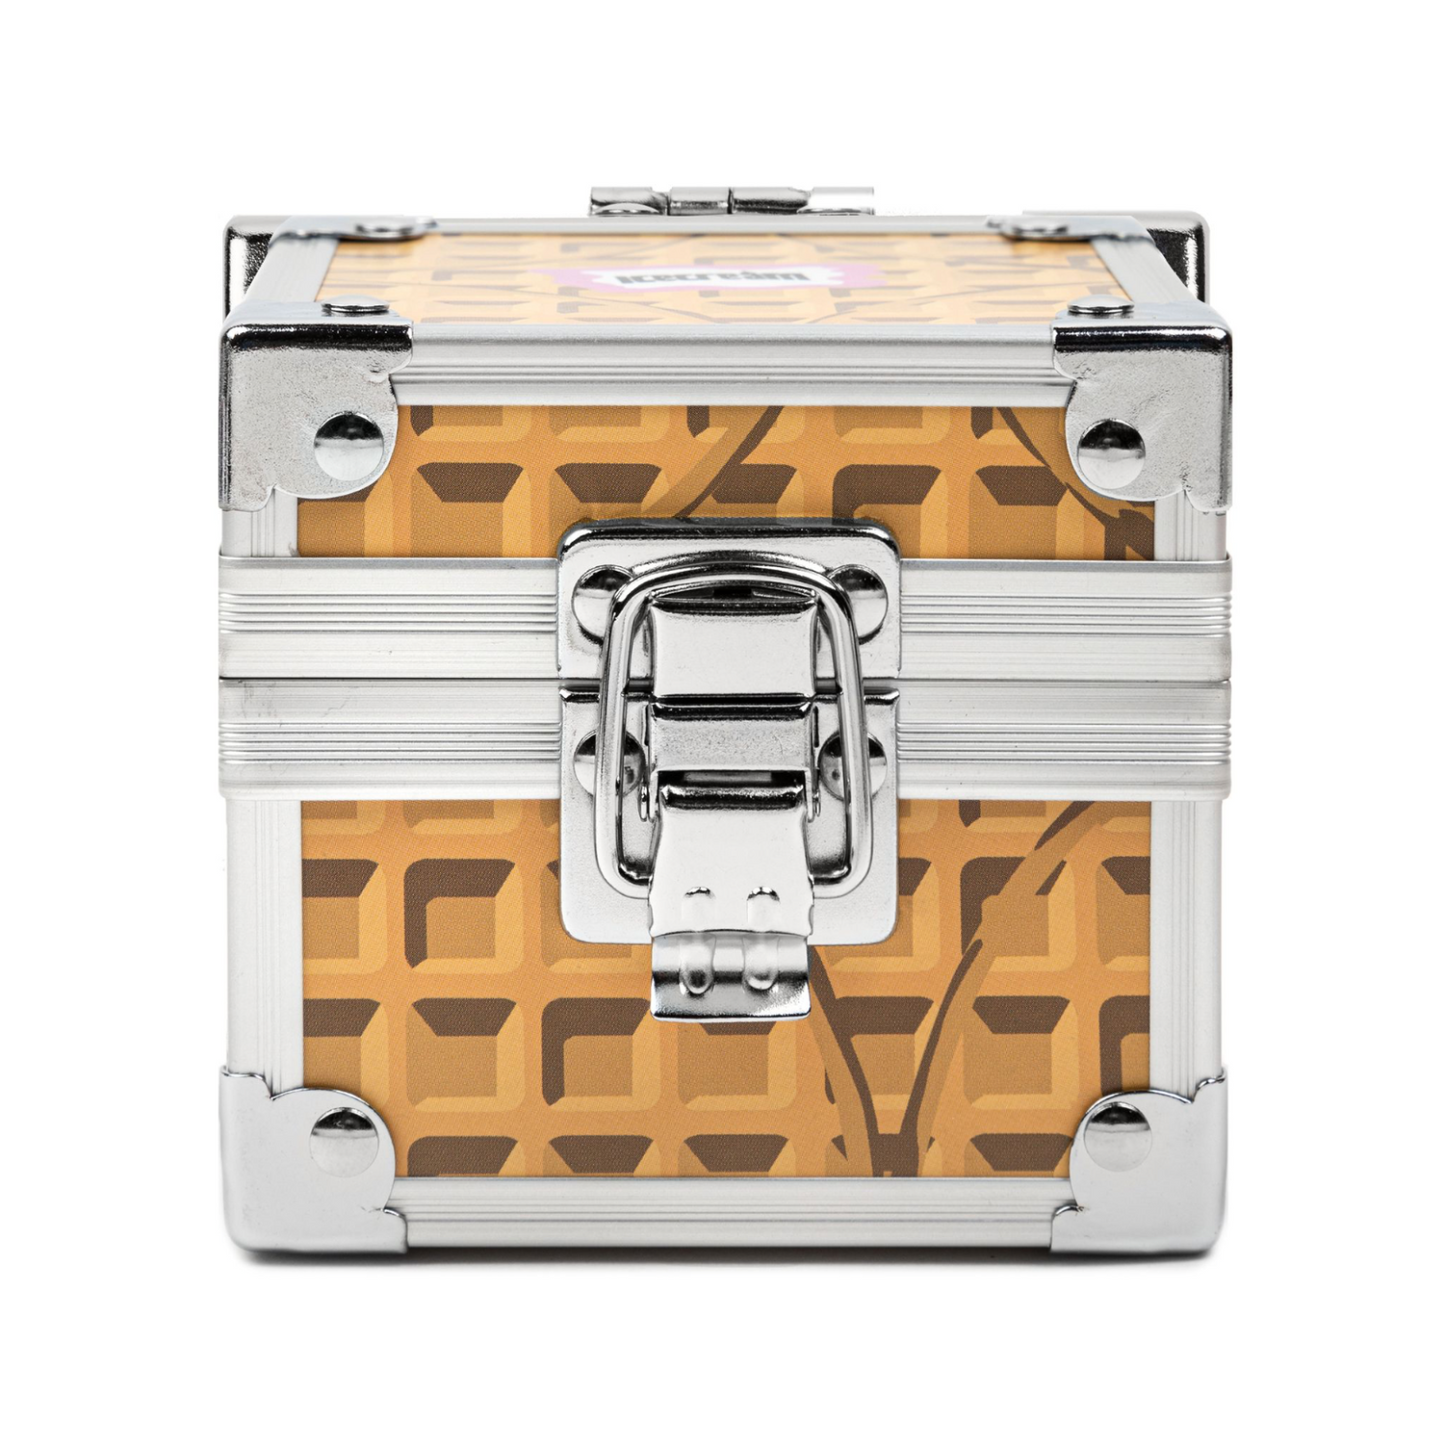 Billionaire Boys Club ICECREAM x Casio G-Shock Waffle Drip DW-5400